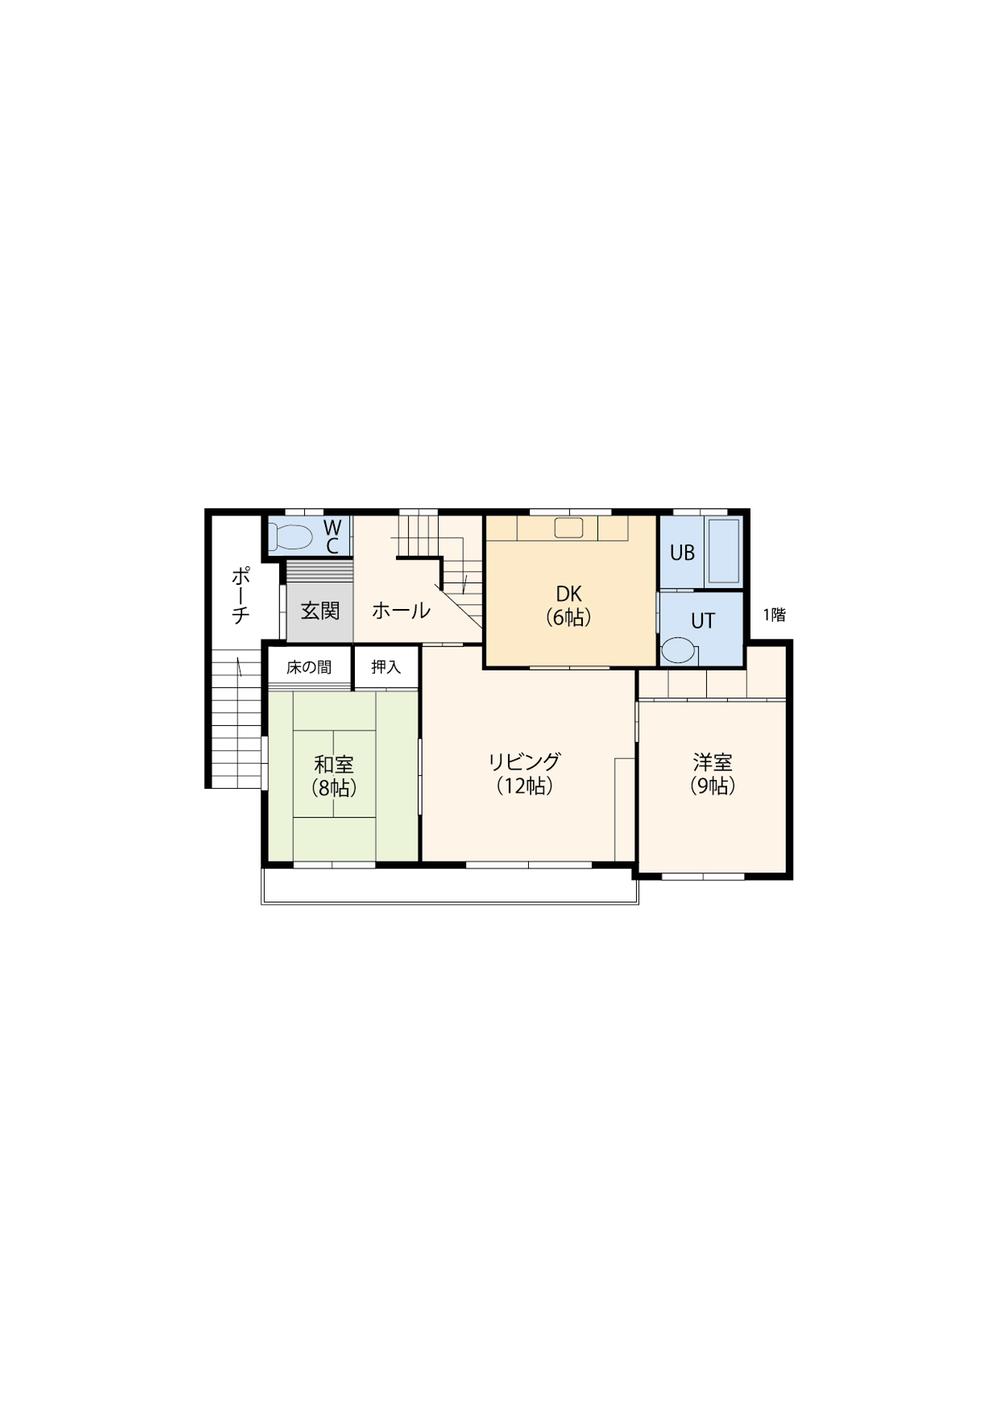 Floor plan. 10.9 million yen, 5LDK, Land area 202.5 sq m , Building area 138.37 sq m